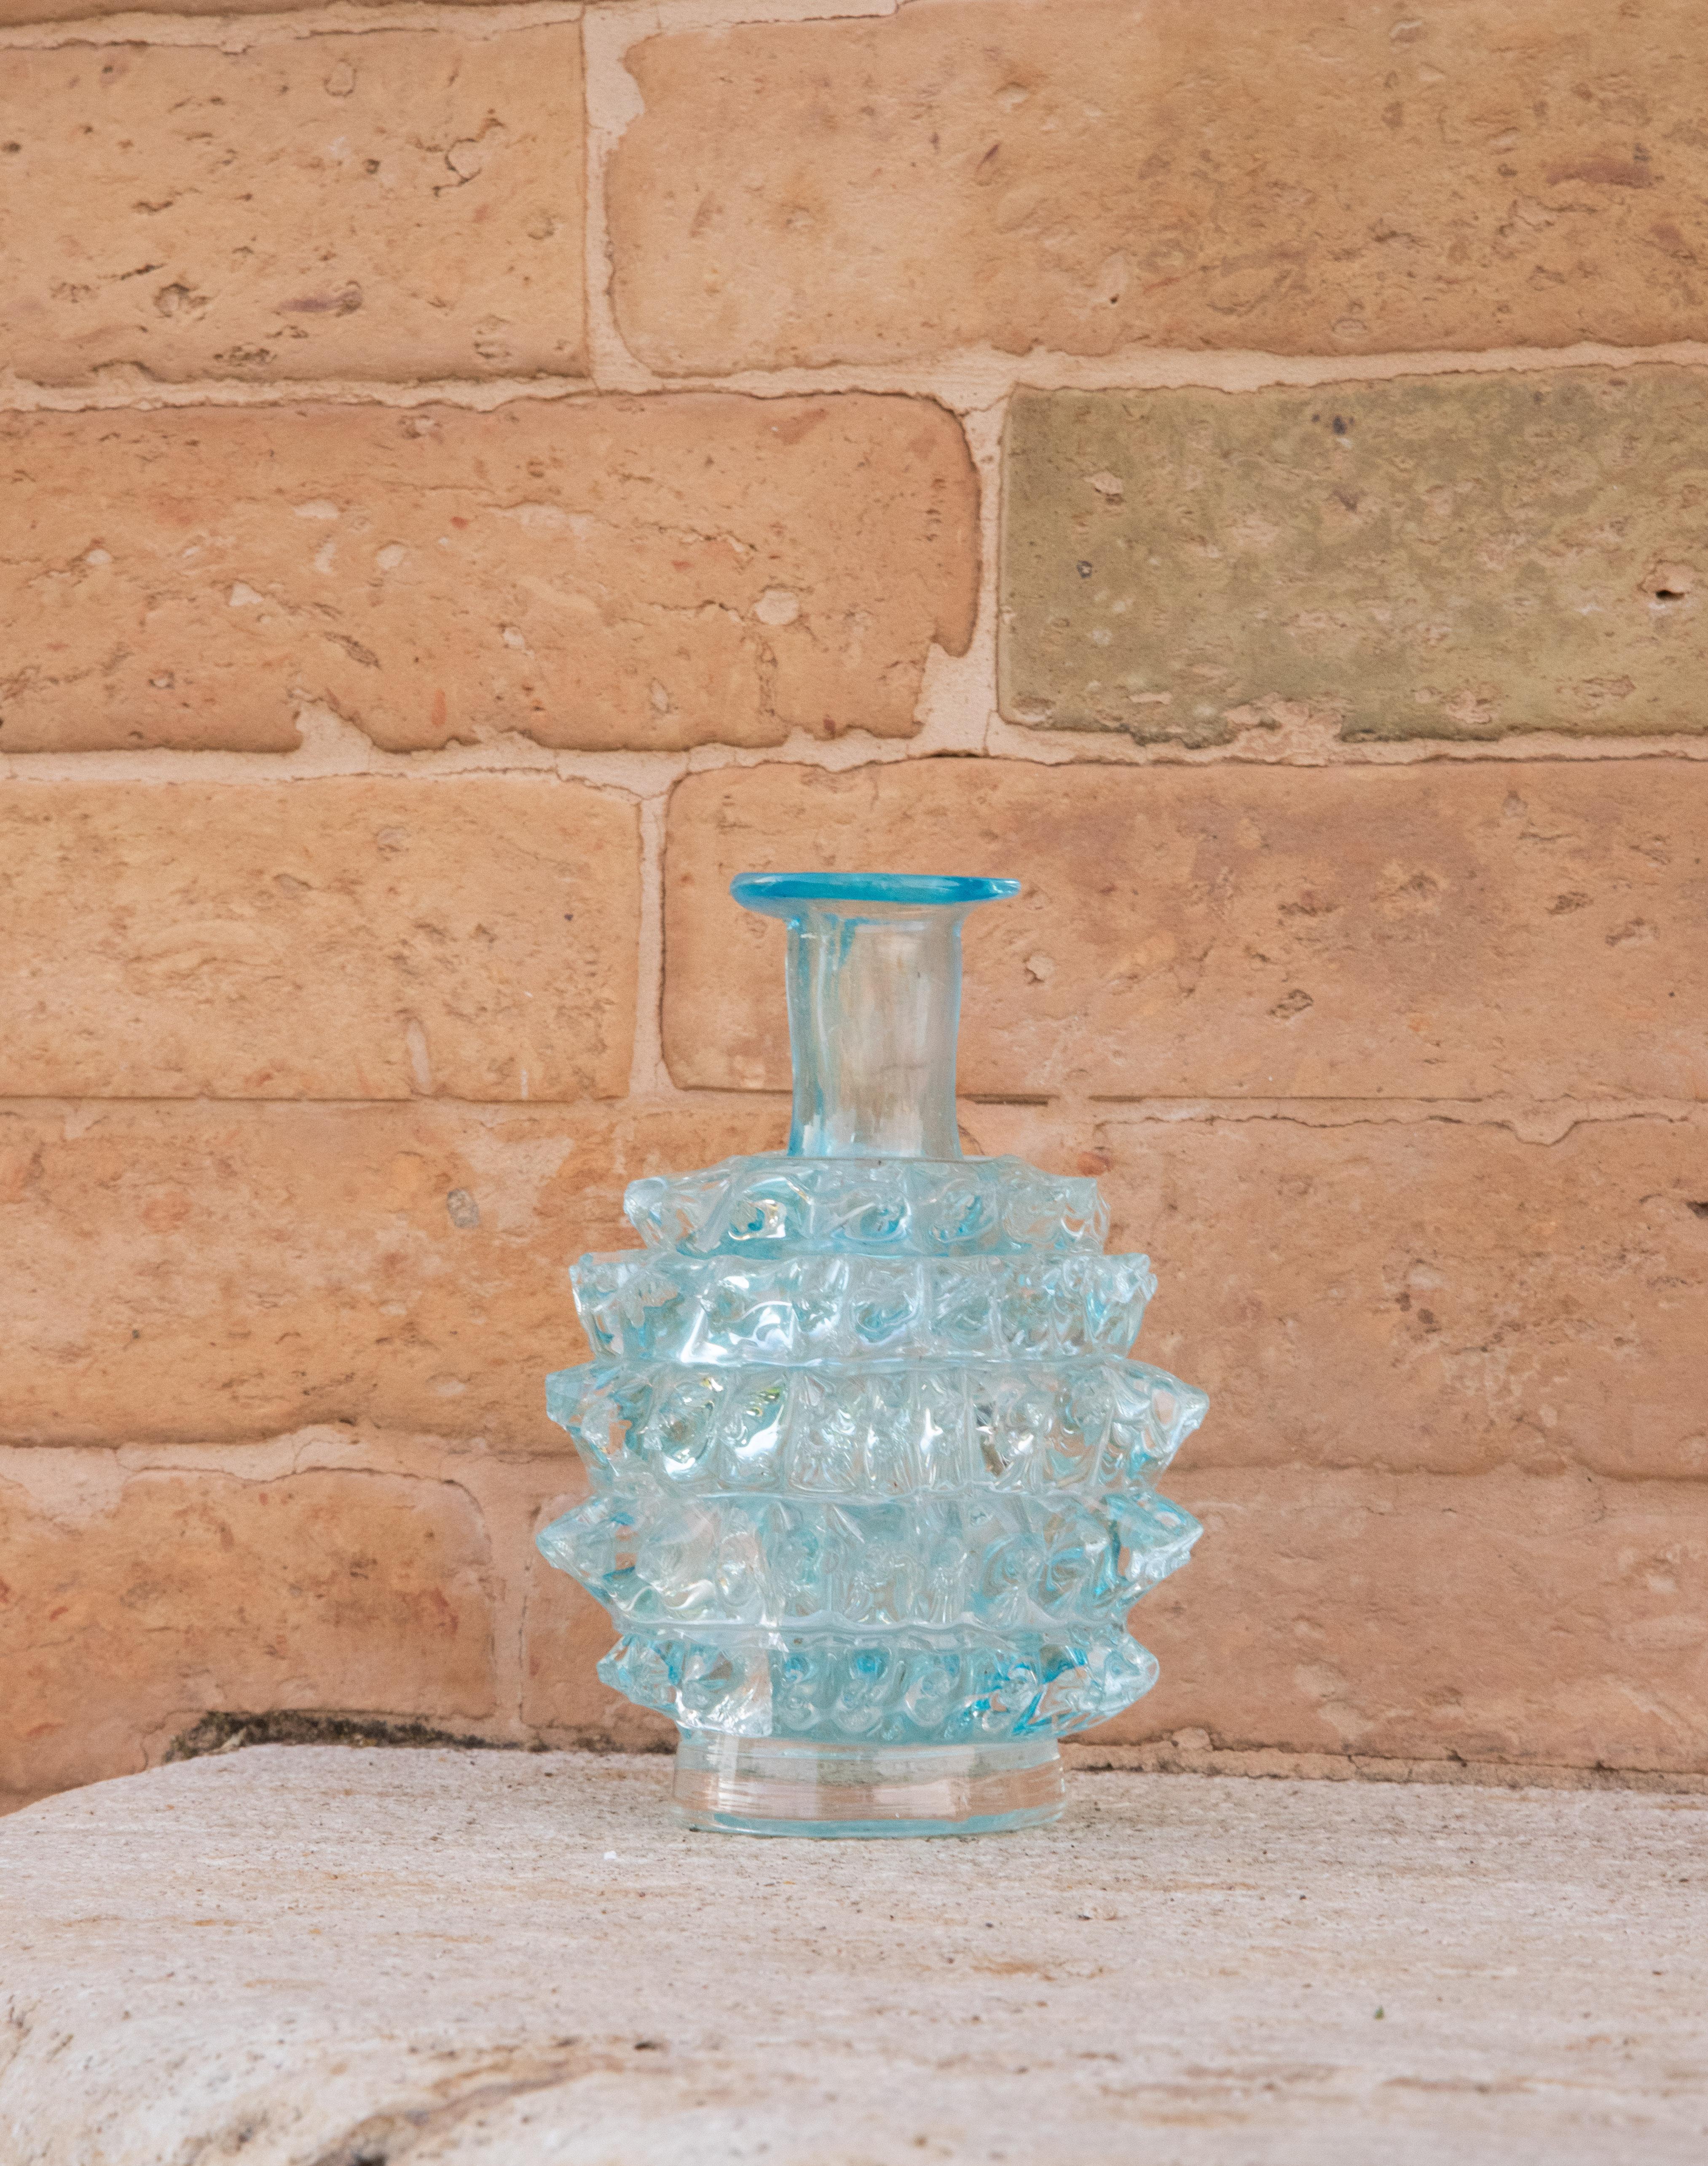 Étonnant vase en verre de Murano du milieu du siècle, soufflé à la bouche dans un rare rostrato blu. Ce magnifique objet a été produit dans les années 1940 en Italie par Ercole Barovier pour Barovier&Toso.

Ce chef-d'œuvre est un hommage fantastique